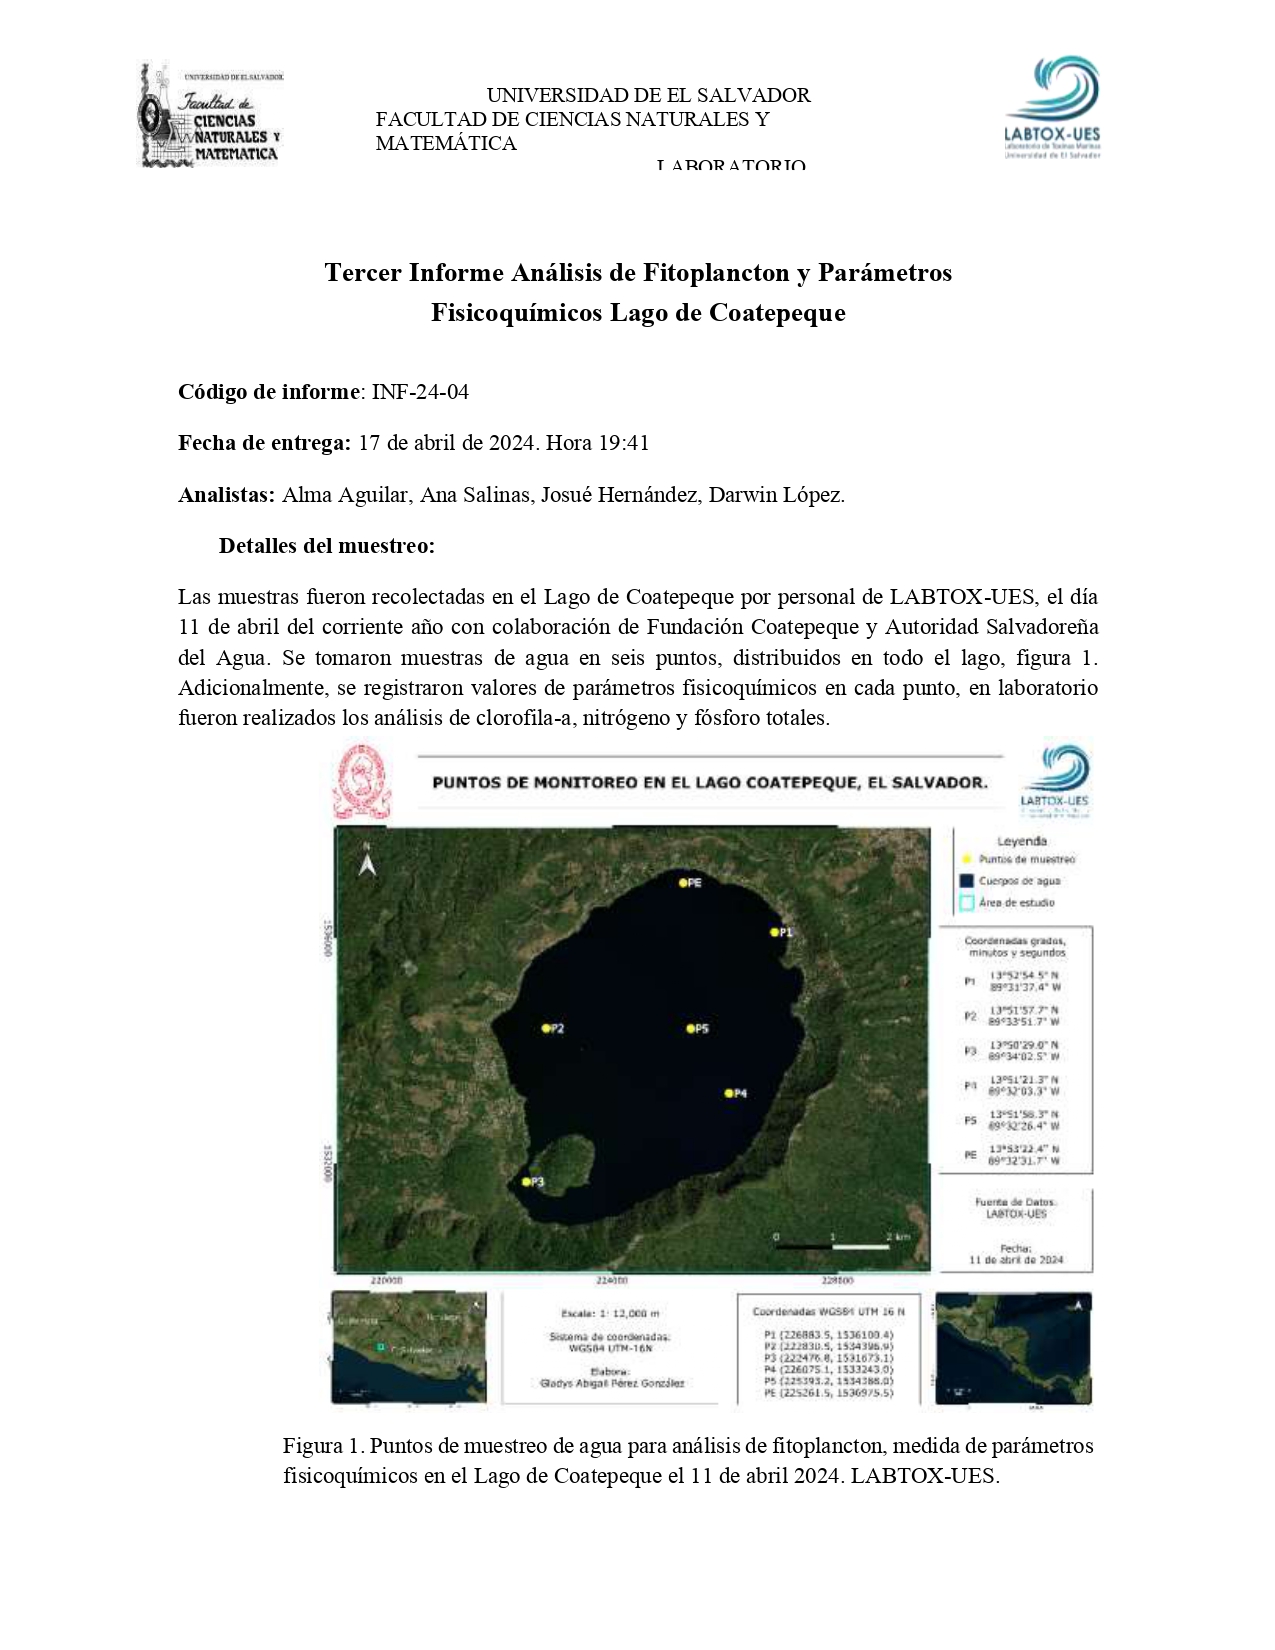 LABTOX – UES presenta resultados de monitoreo, Lago de Coatepeque